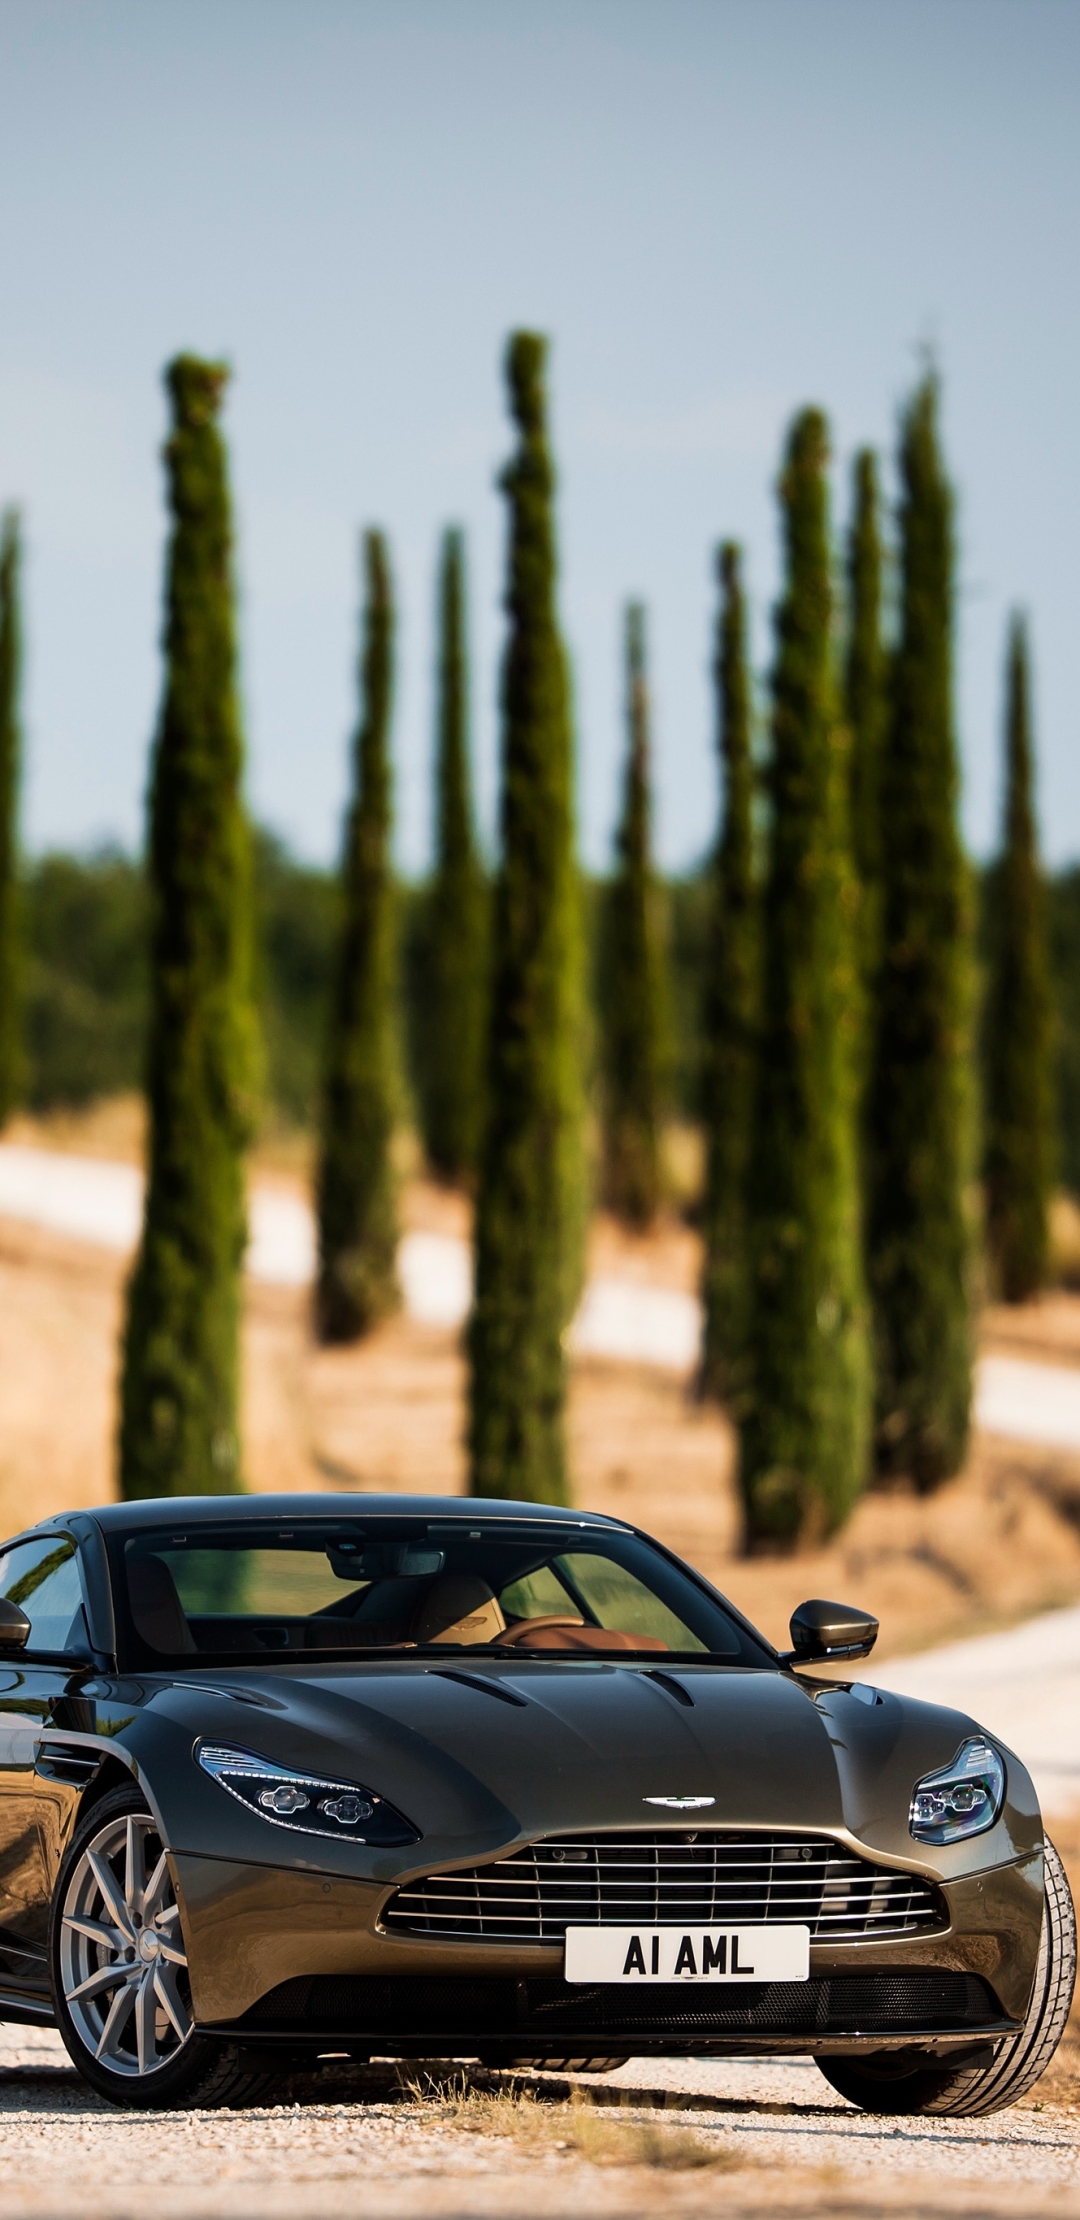 Descarga gratuita de fondo de pantalla para móvil de Aston Martin, Coche, Gran Turismo, Aston Martin Db11, Vehículos.